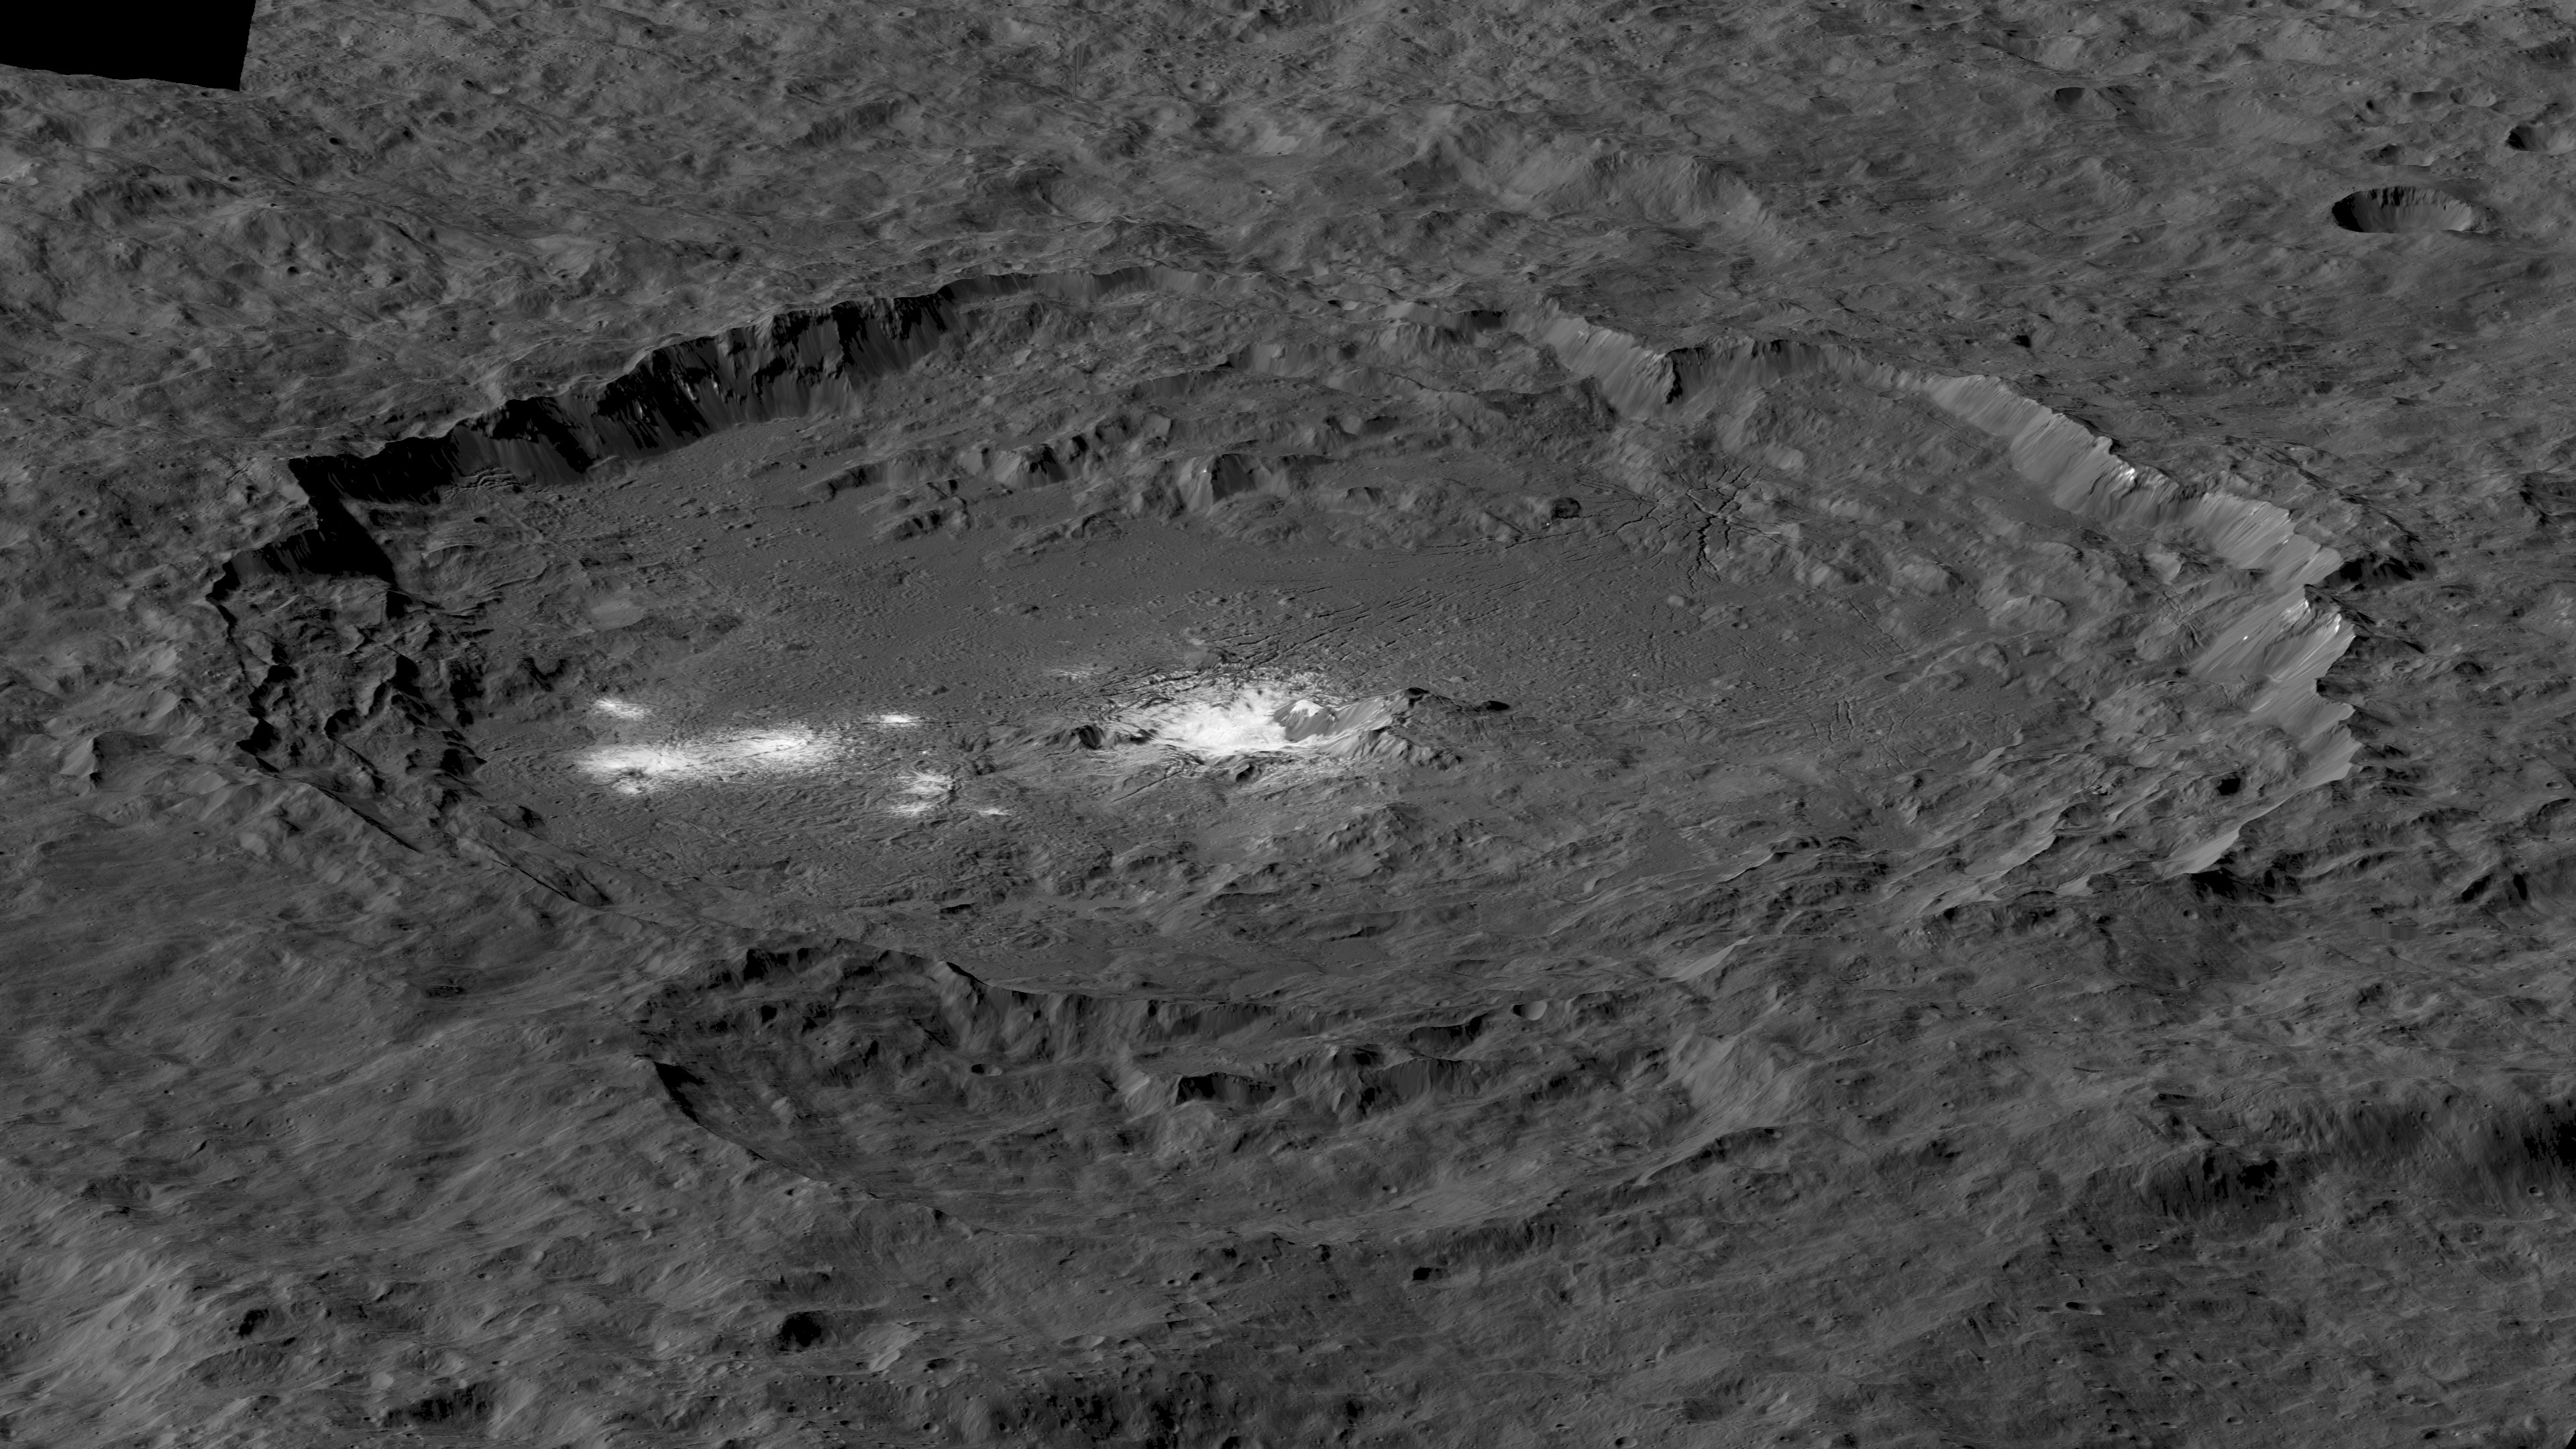 Superbe vue d’ensemble du cratère Occator. Au centre, les fameuses taches blanches. Cliquez ici pour obtenir l’image en haute résolution. © Nasa, JPL-Caltech, UCLA, MPS, DLR, IDA